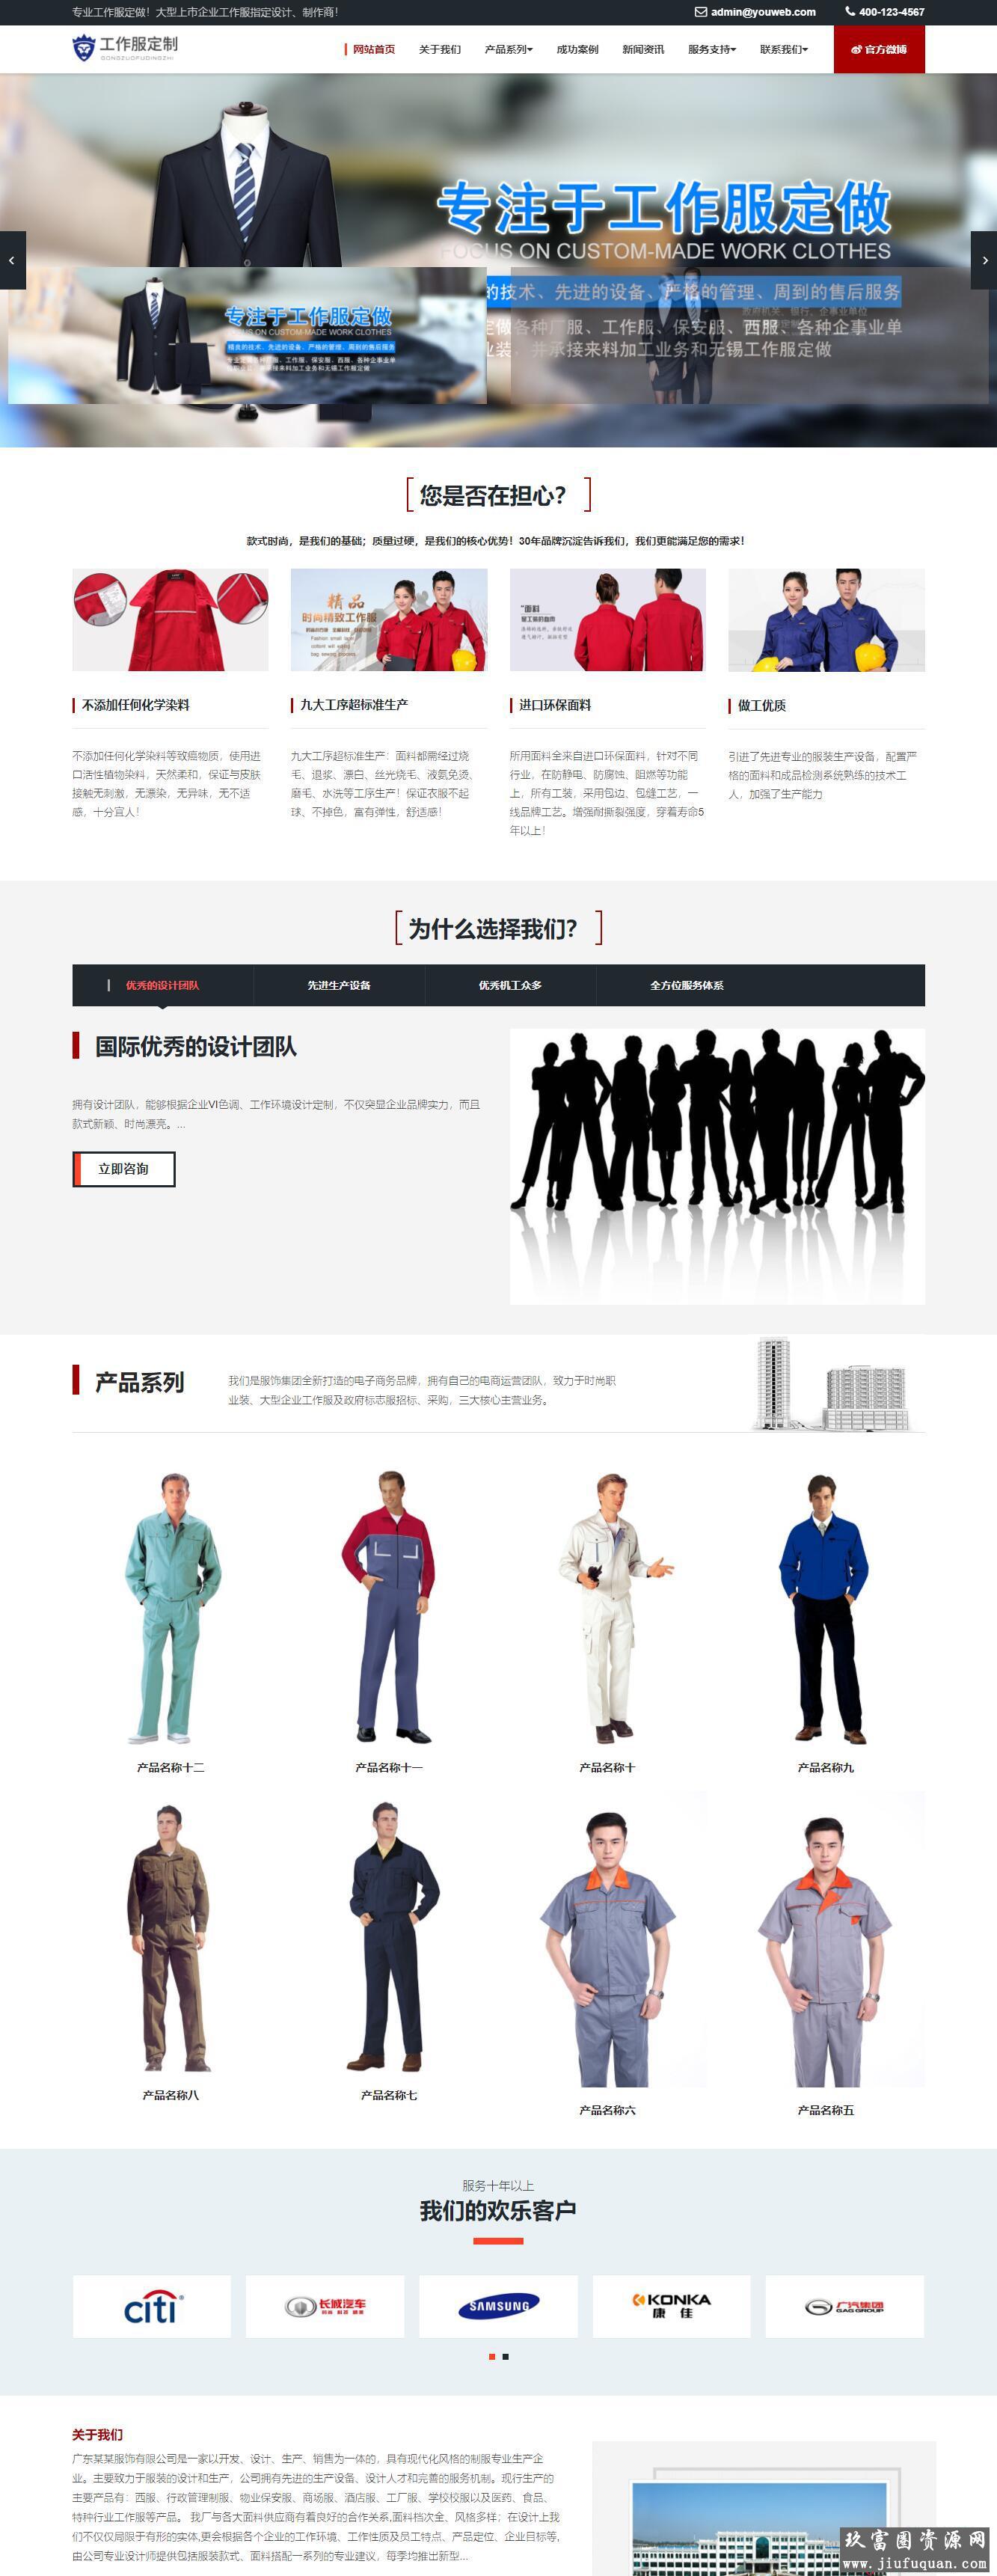 易优cms工作服设计定制类企业网站模板